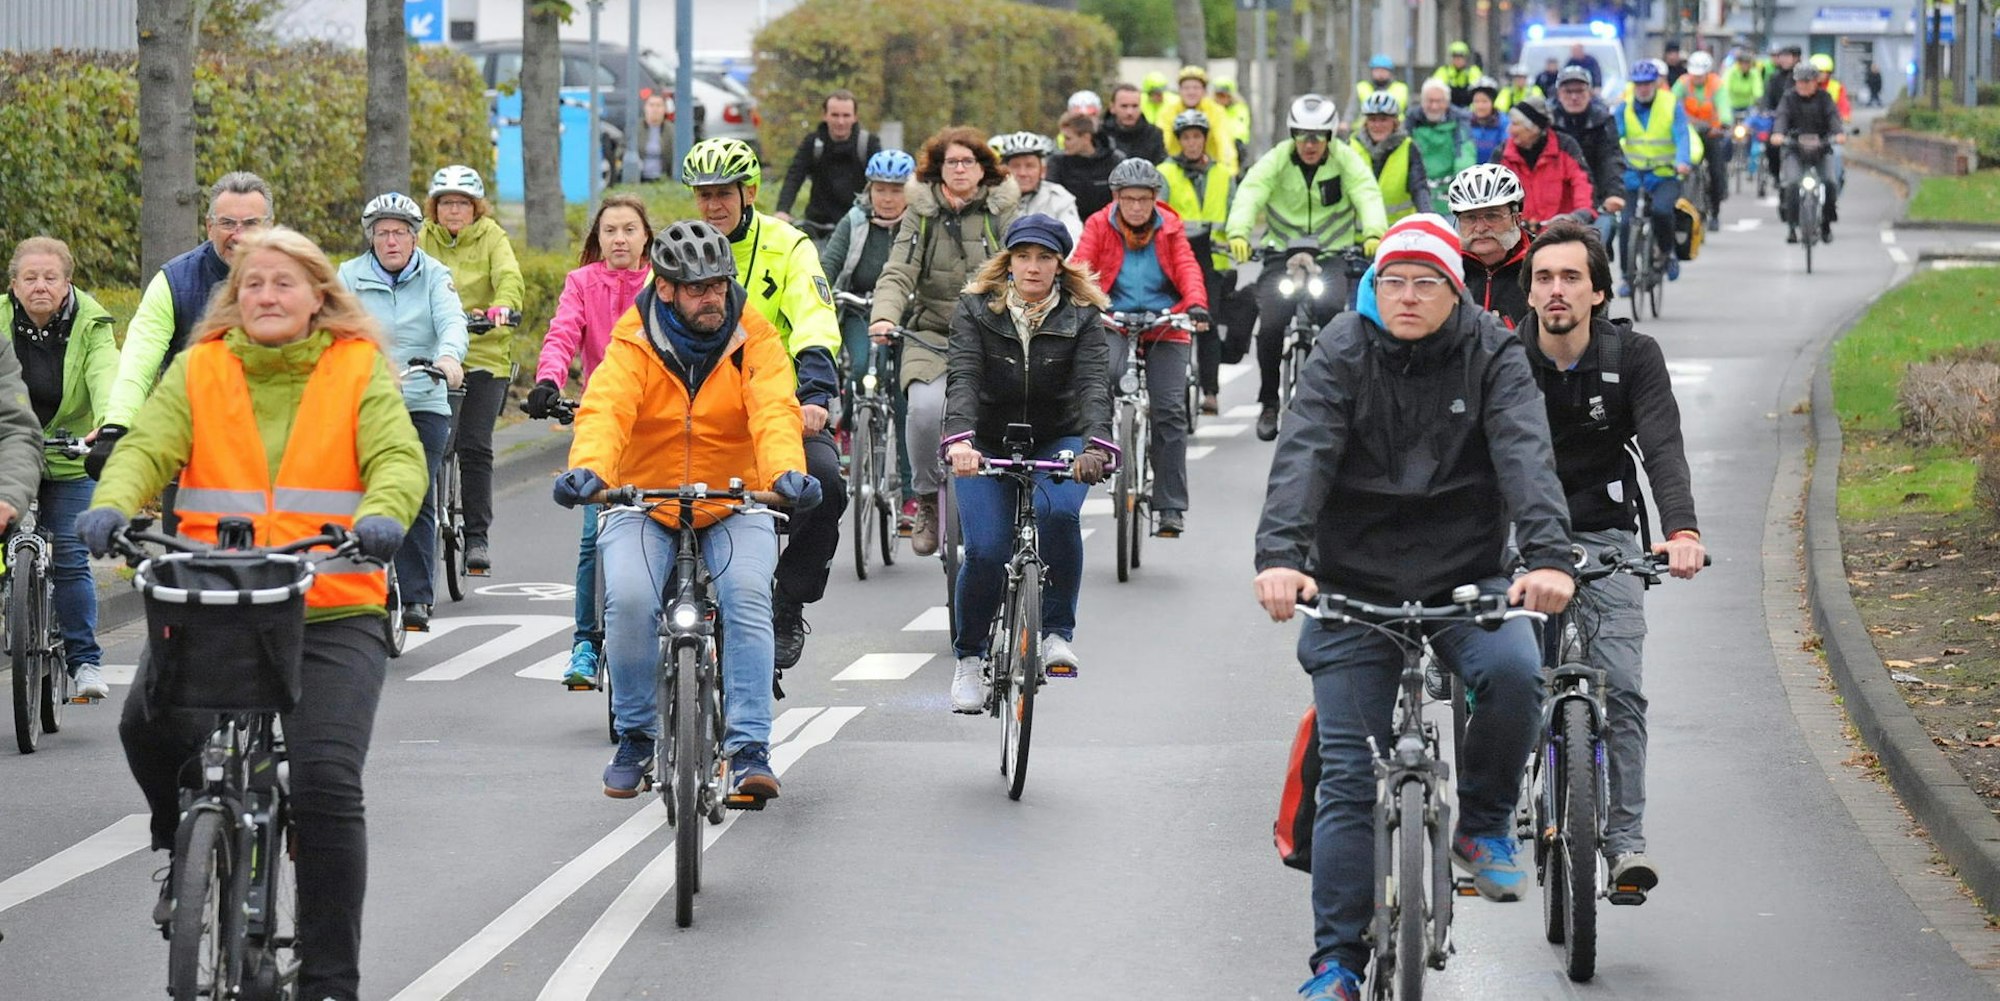 Protest für bessere Bedingungen für Radfahrer: Die „Critical Mass“ ist wieder unterwegs.